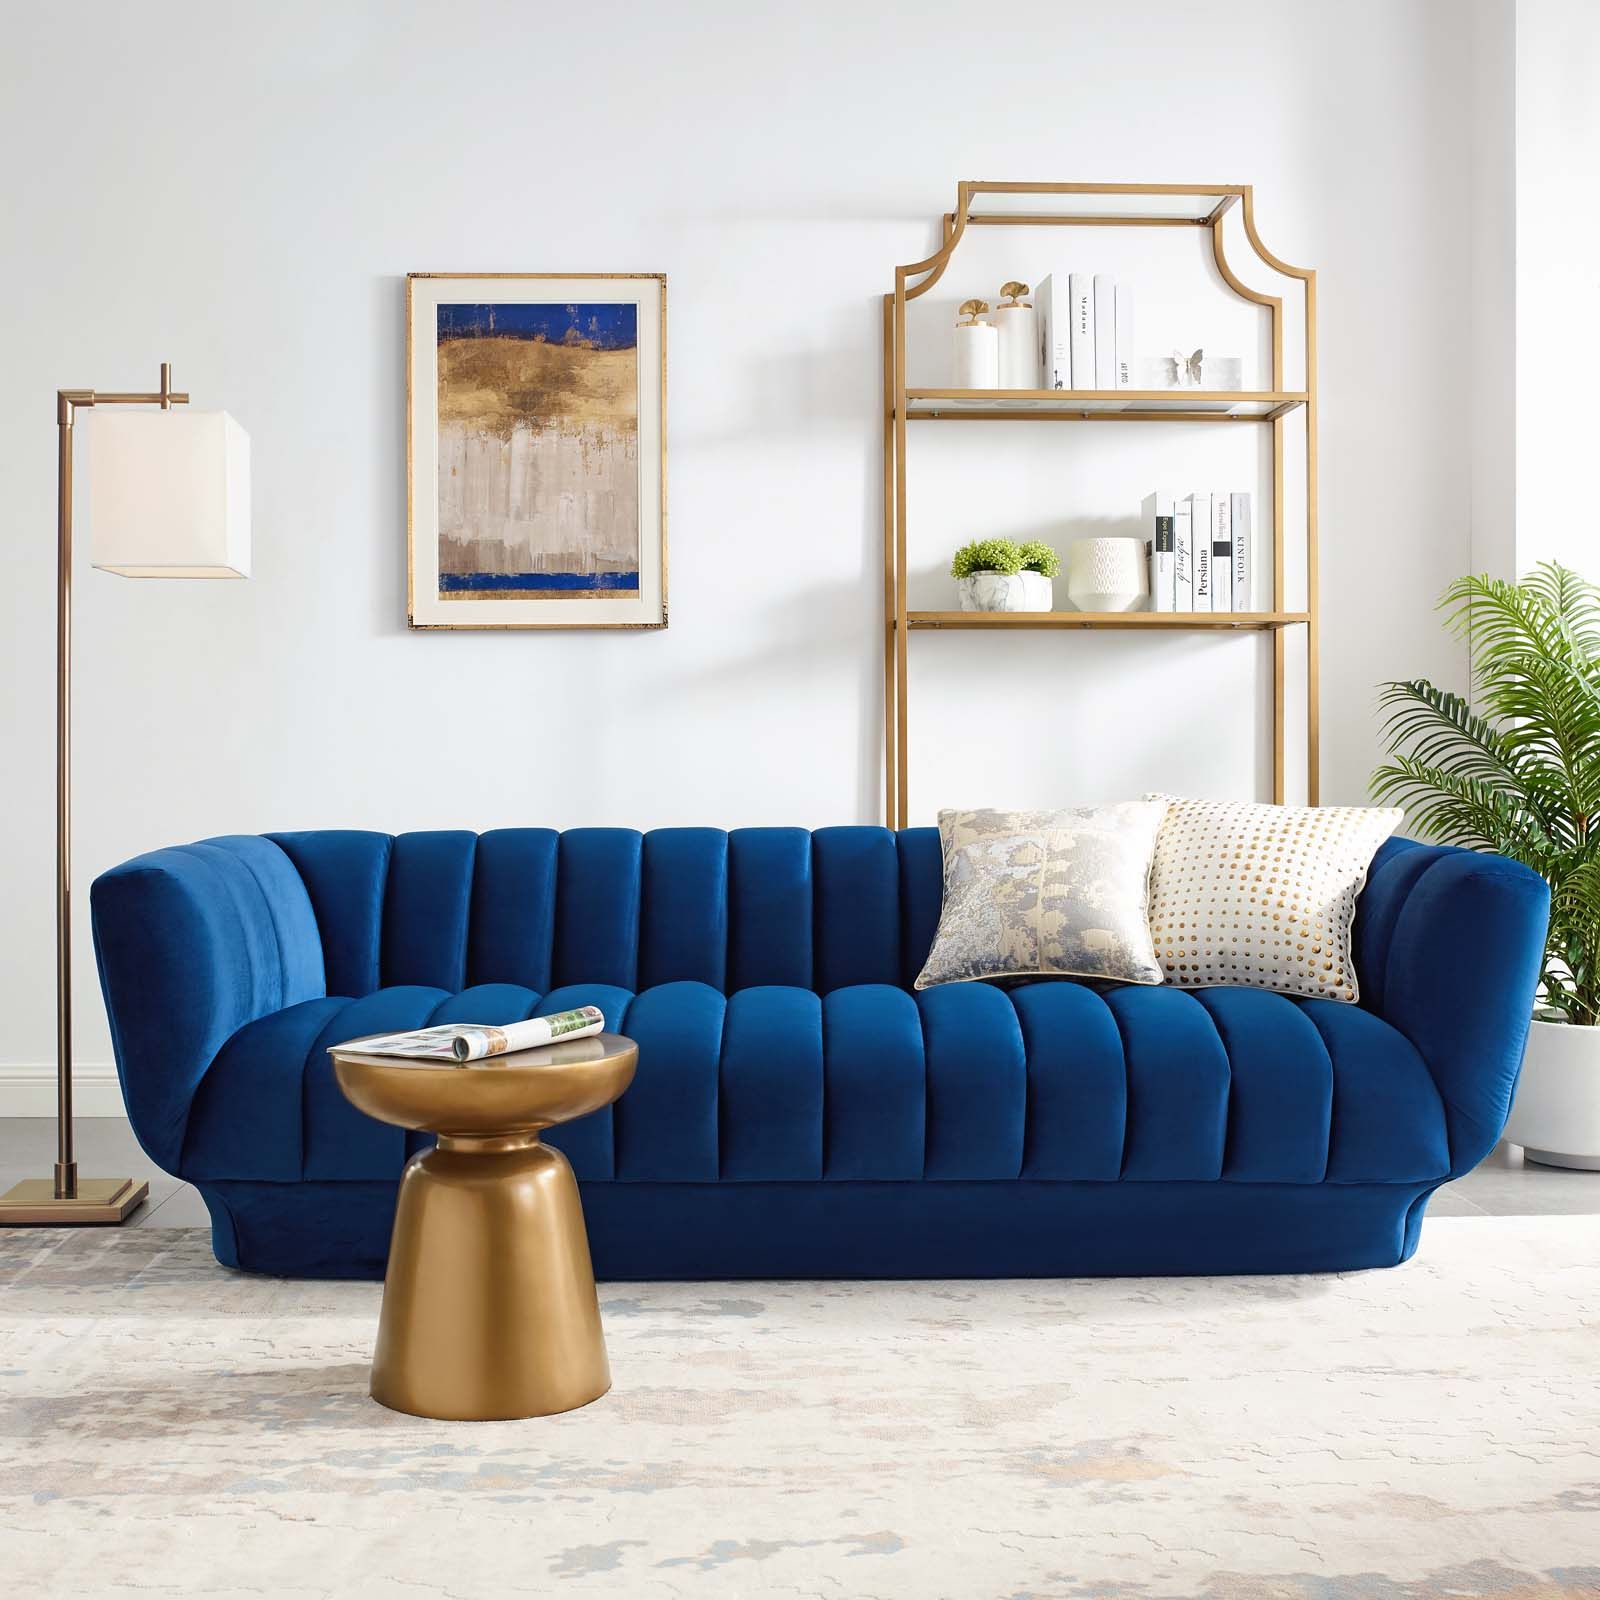 Beige Velvet Tufted Sofa – Get Inspired With Our Curated Ideas For Inside Elegant Beige Velvet Sofas (Gallery 20 of 20)